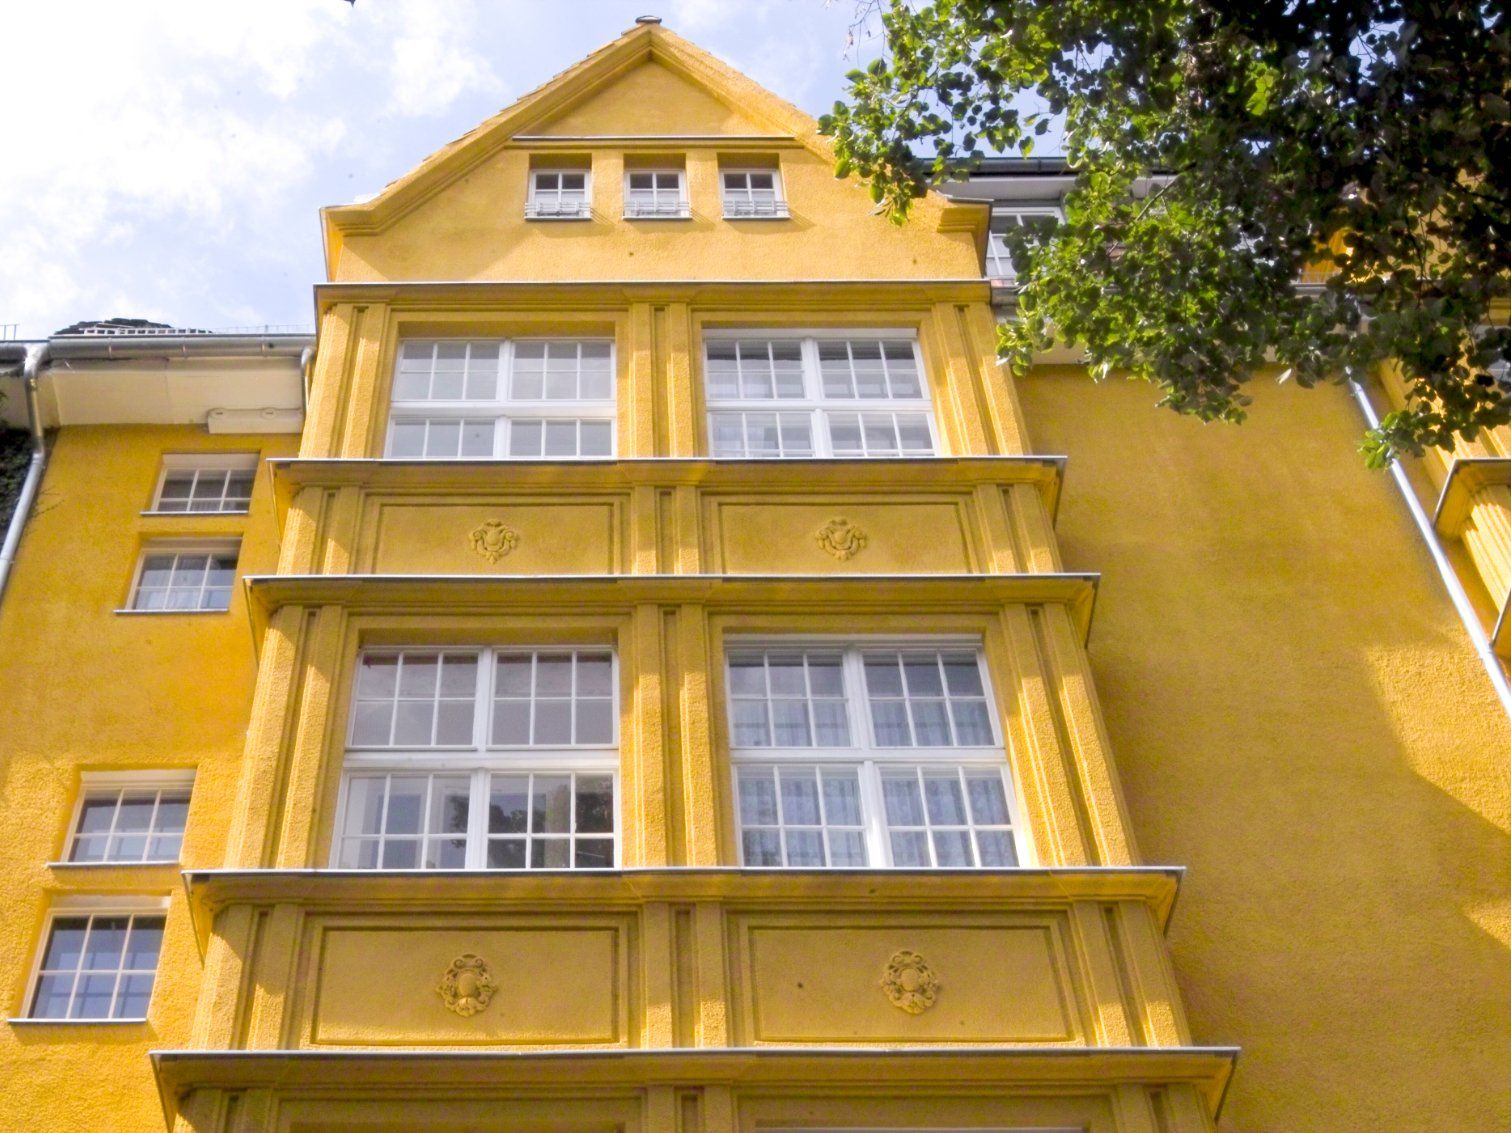 Gelbe Hausfassade eines schönen Altbaus